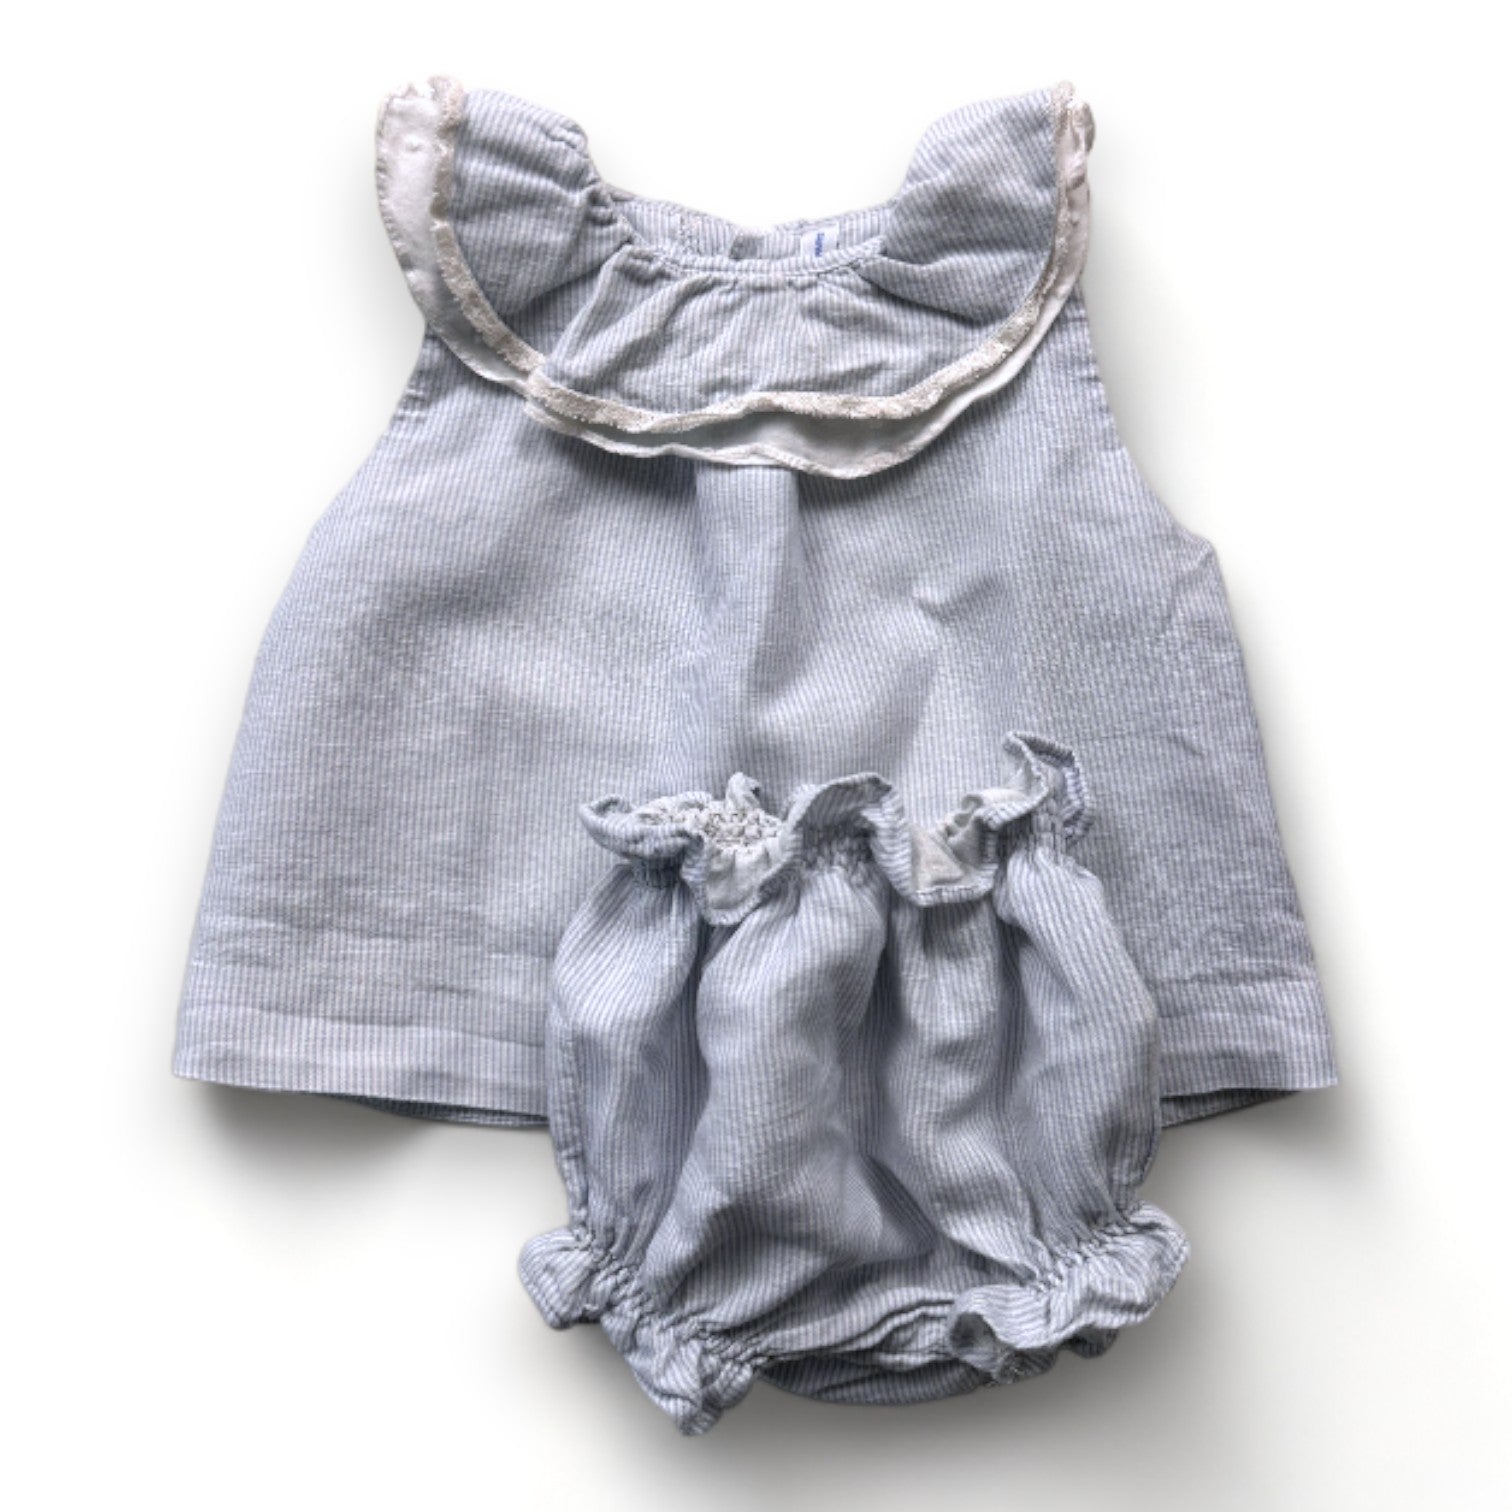 LA CHATELAINE - Ensemble robe et bloomer en lin bleu et blanc à rayures - 12 mois